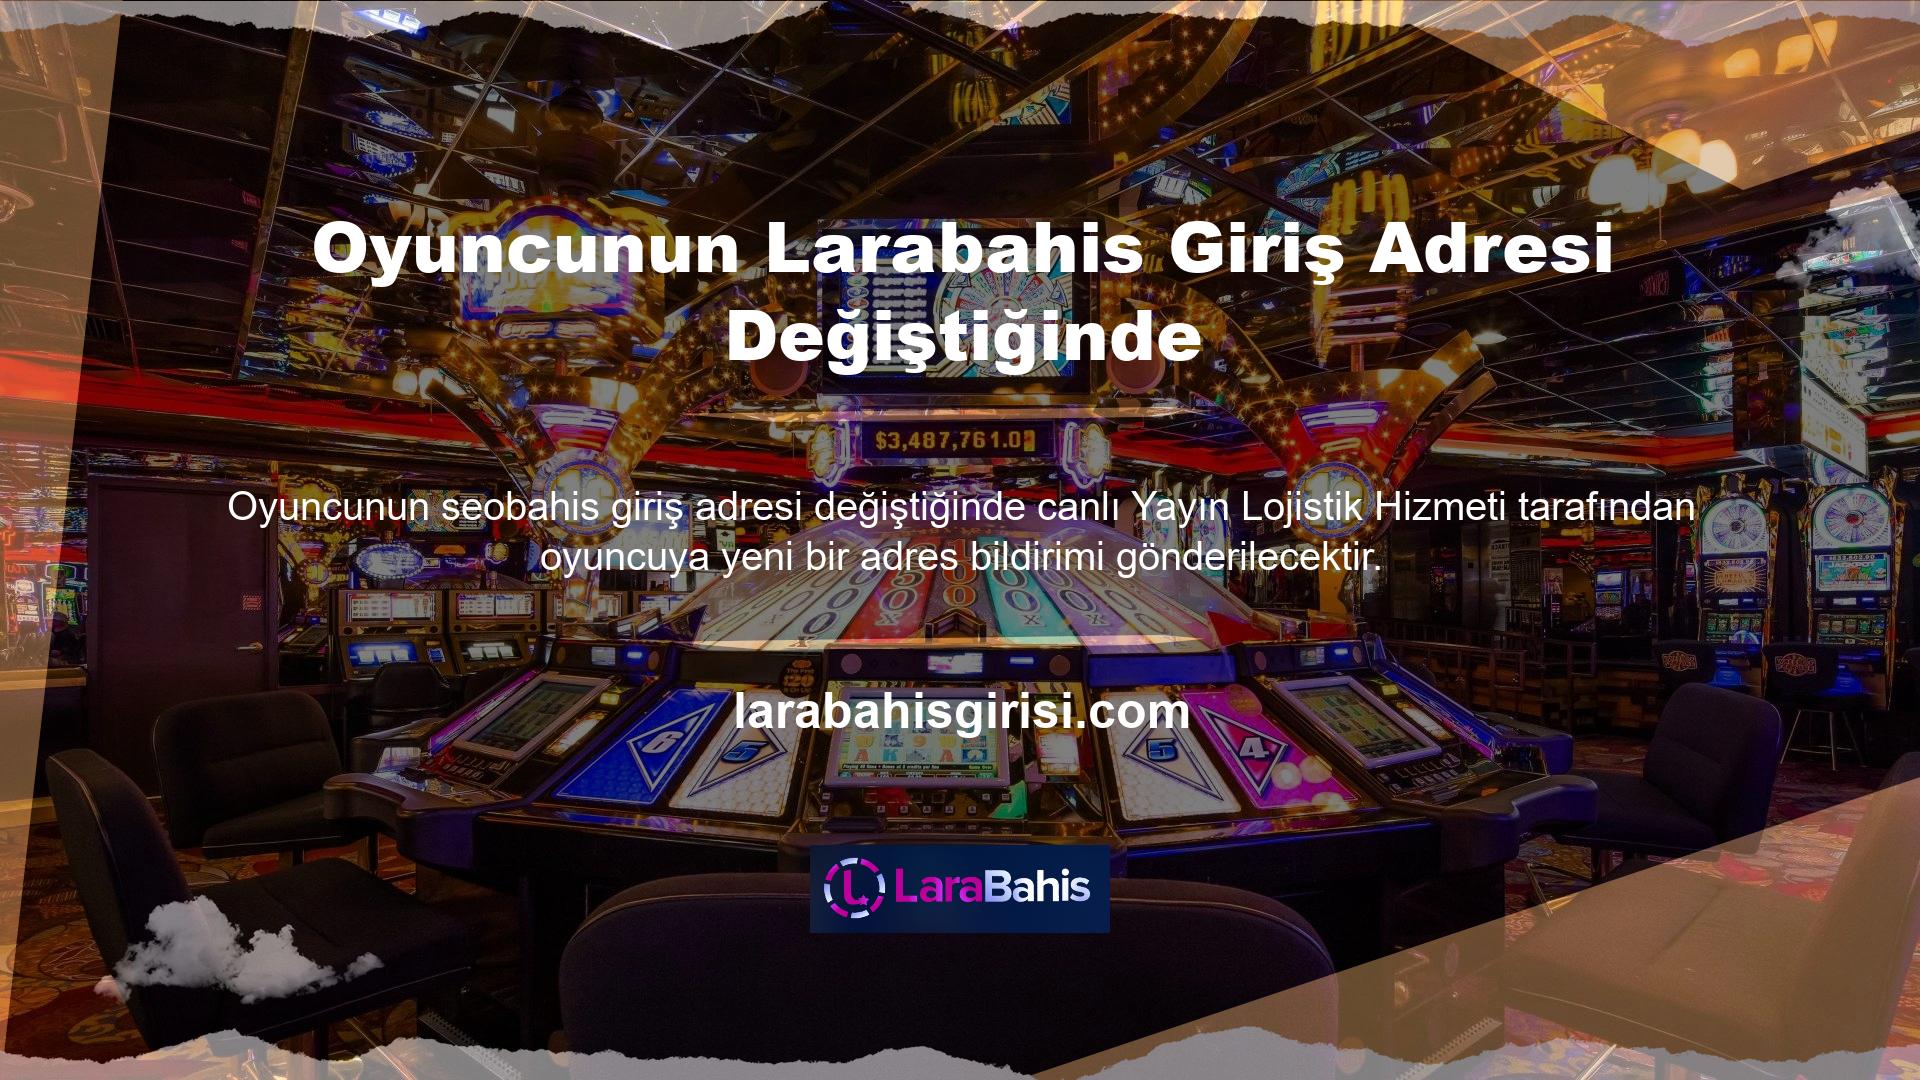 Diğer online casino sitelerinde olduğu gibi Larabahis Casino Bonus da oyunculara çeşitli bonuslar sunmaktadır